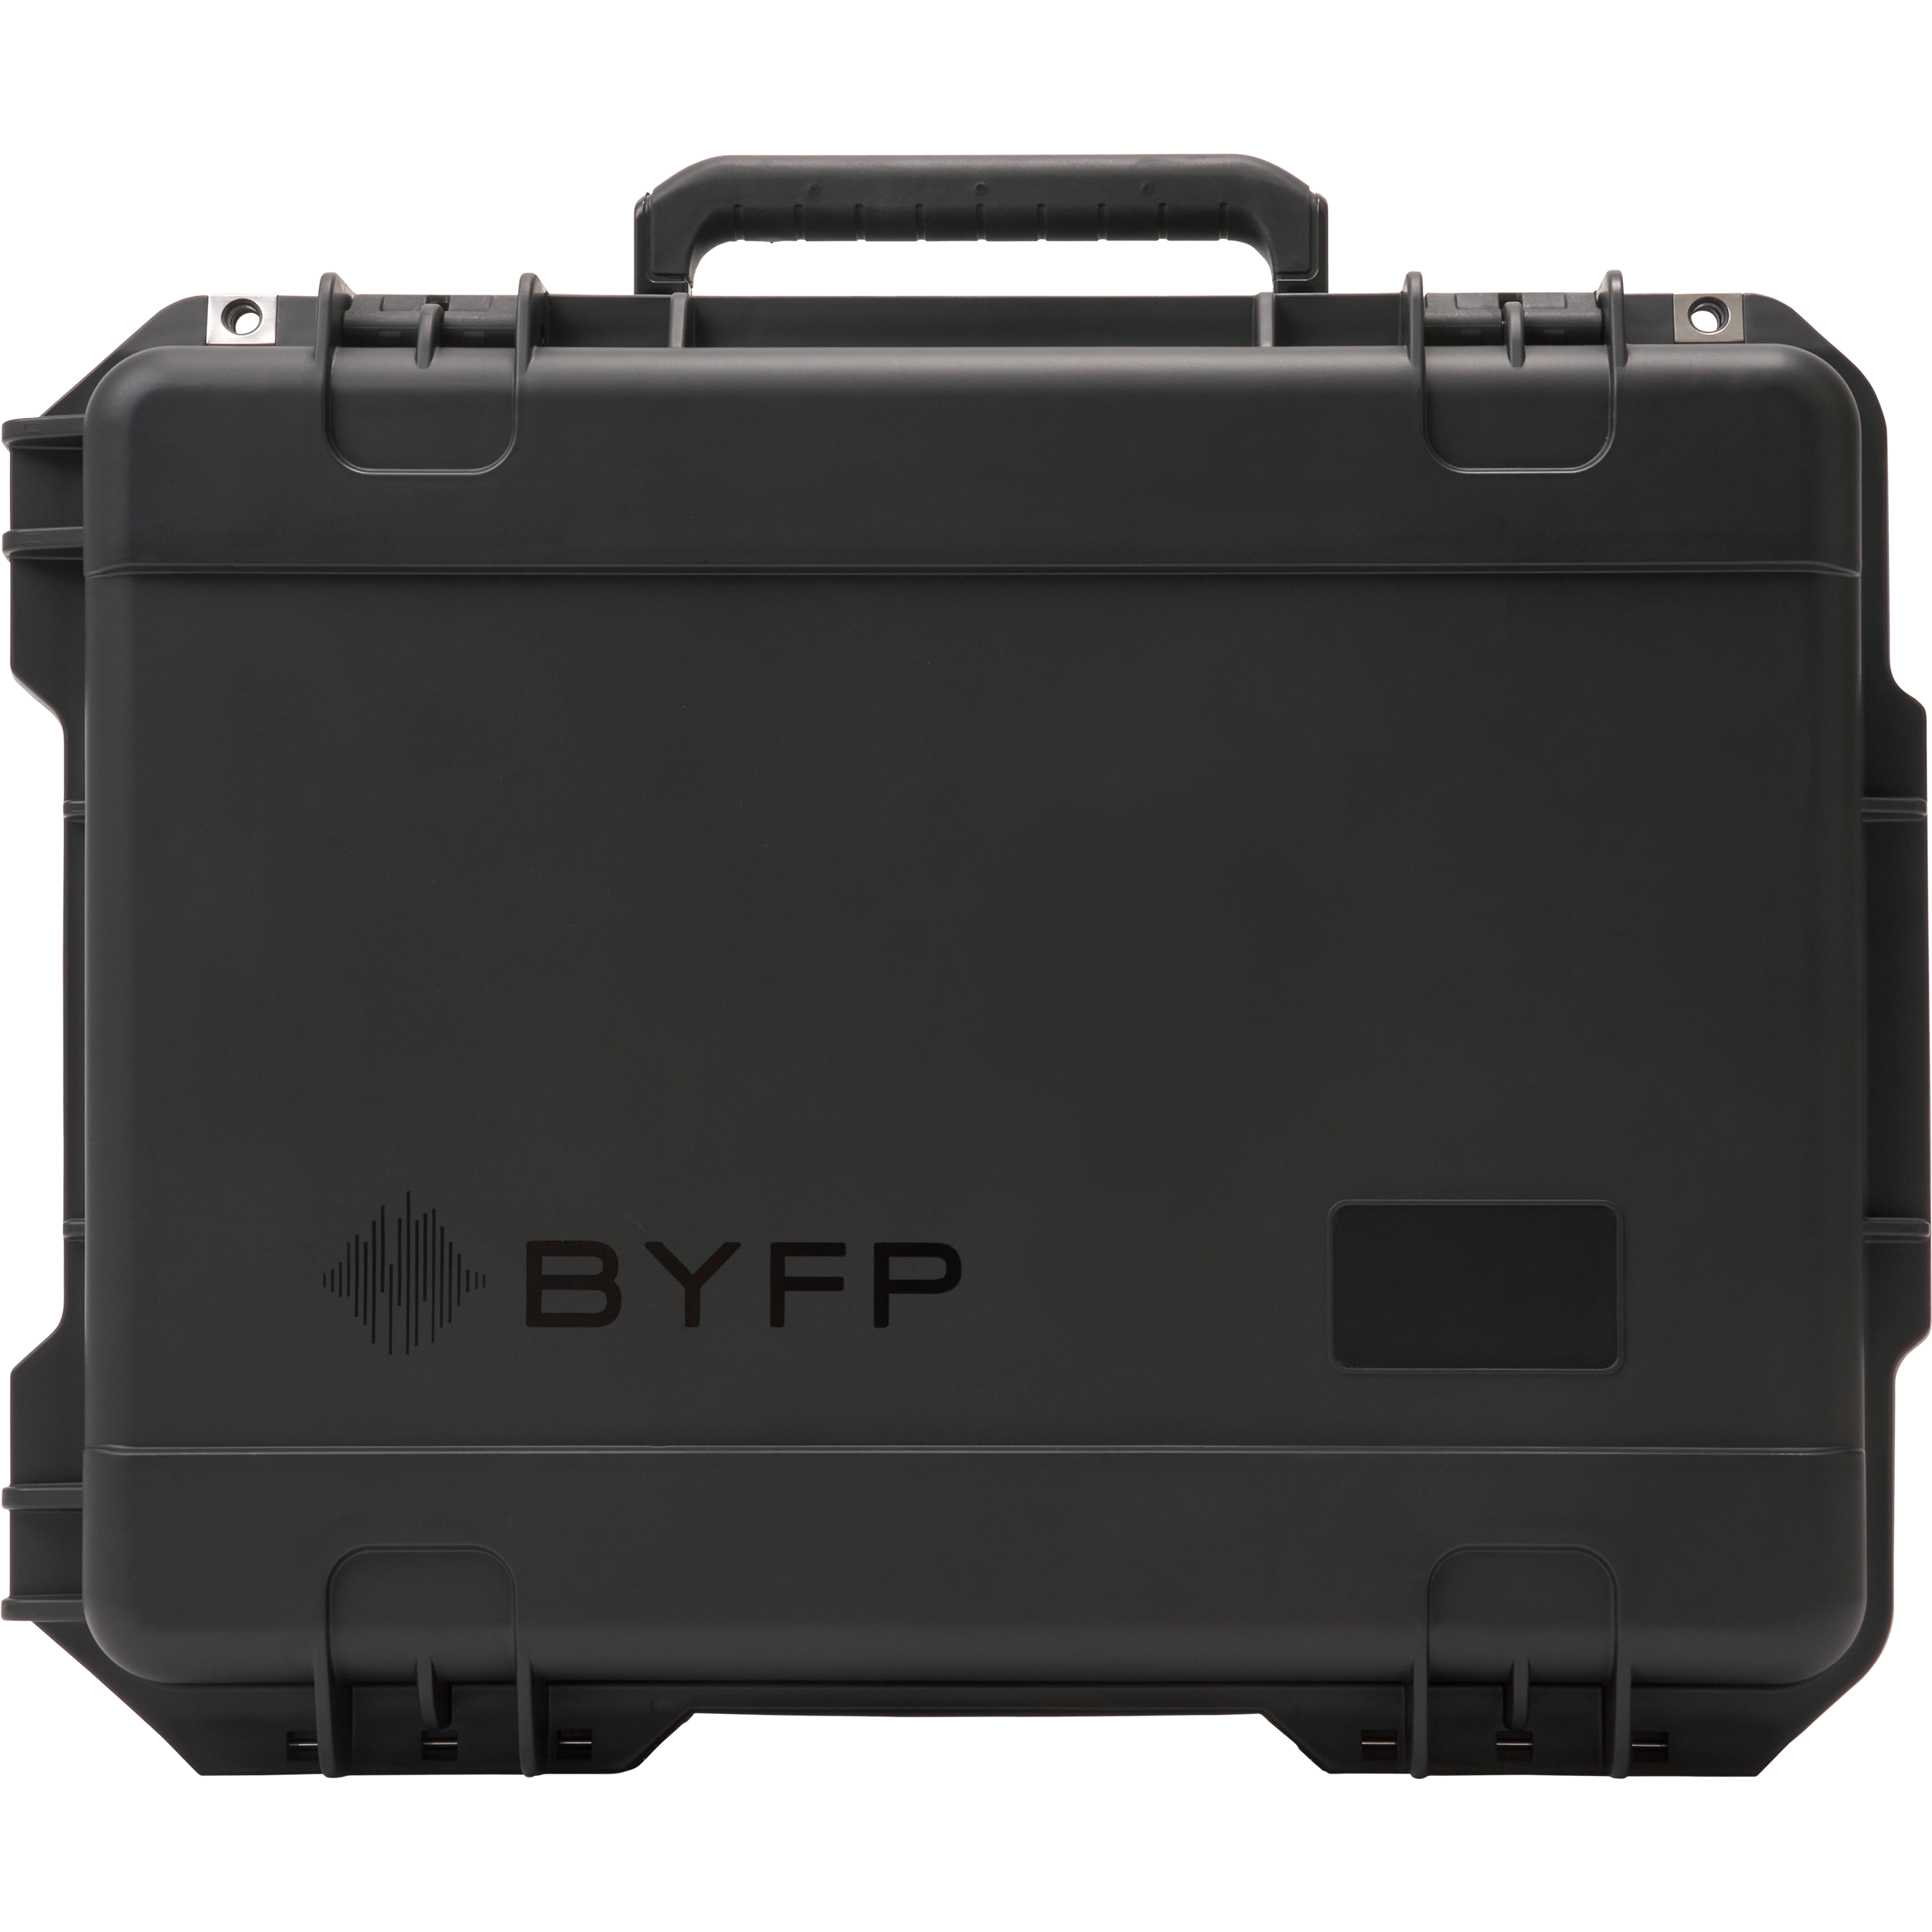 BYFP ipCase for 6x Blizzard LightCaster